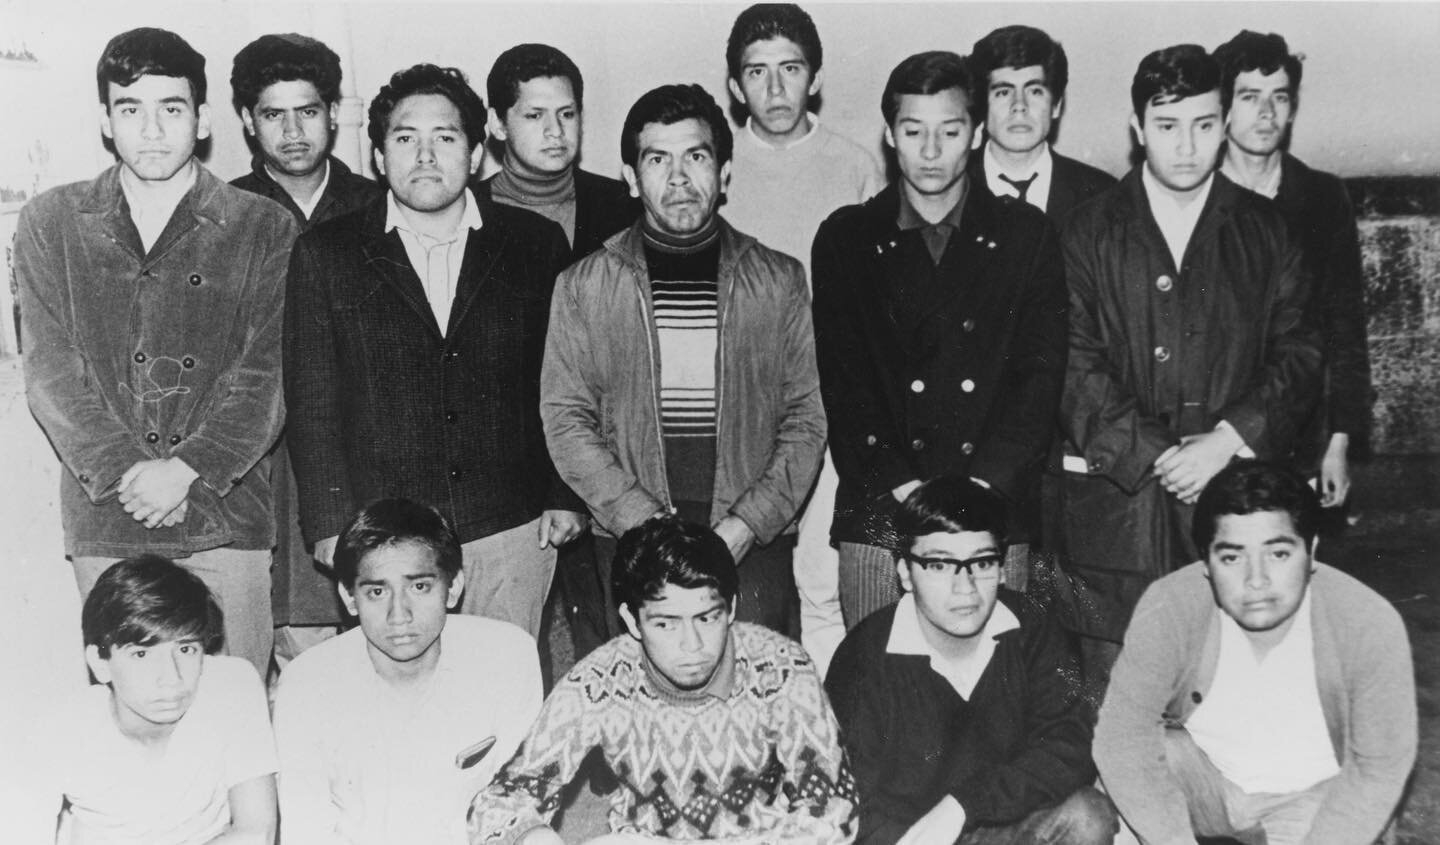 Detenidos el 3 de Octubre de 1968. Detenidos en la c&aacute;rcel preventiva. Archivo General de la Nación. Imagen proporcionada por Raúl Álvarez Garín a Ximena Labra en 2008 #tlatehoy #tlatelolco68 #estudiantes #detenidos #detenidas #2deoctubreno